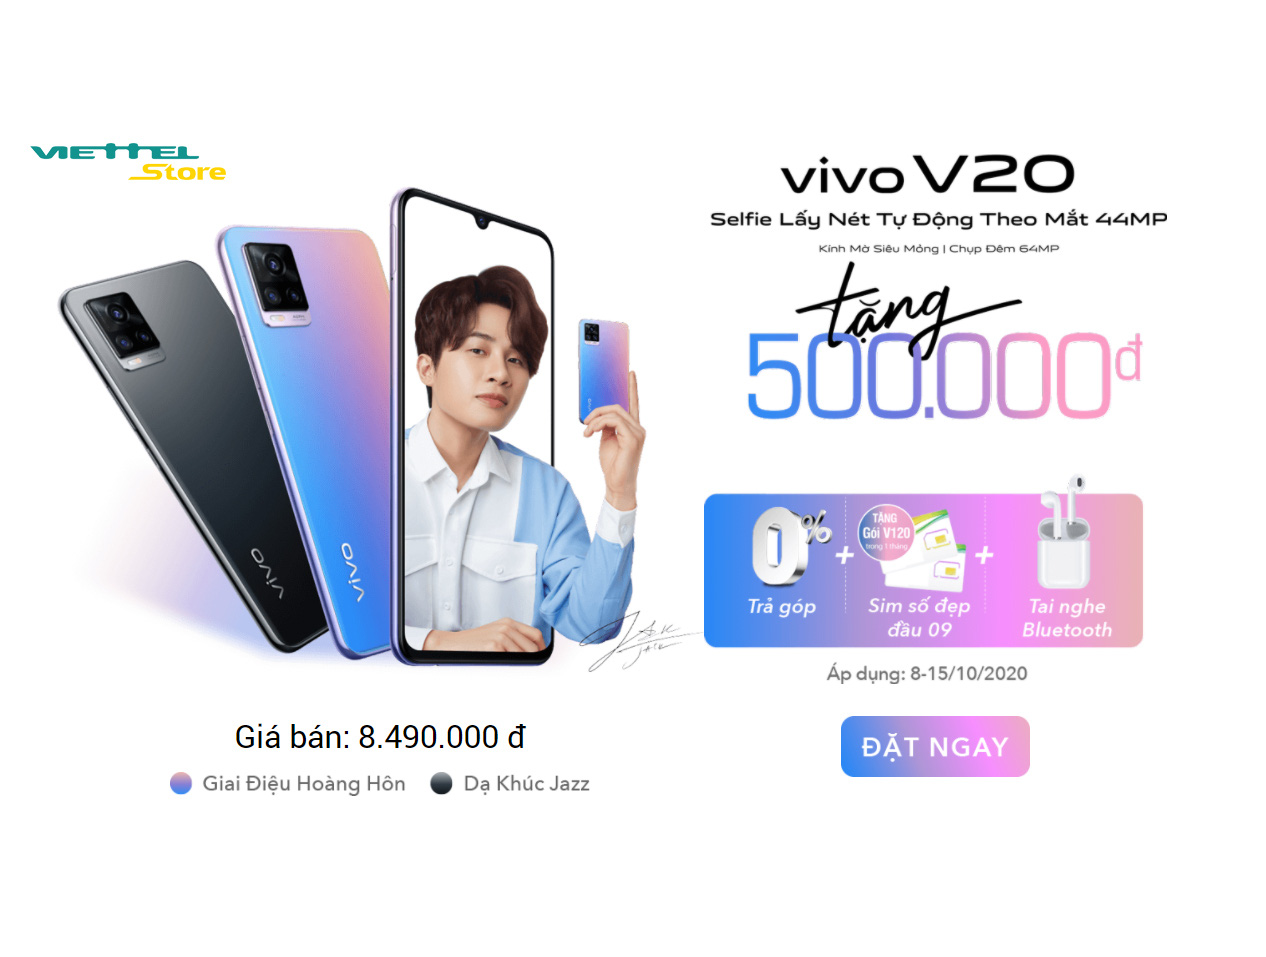 Viettel Store bất ngờ bán vivo V20 dưới 8 triệu đồng đi kèm ưu đãi viễn thông - Ảnh 1.